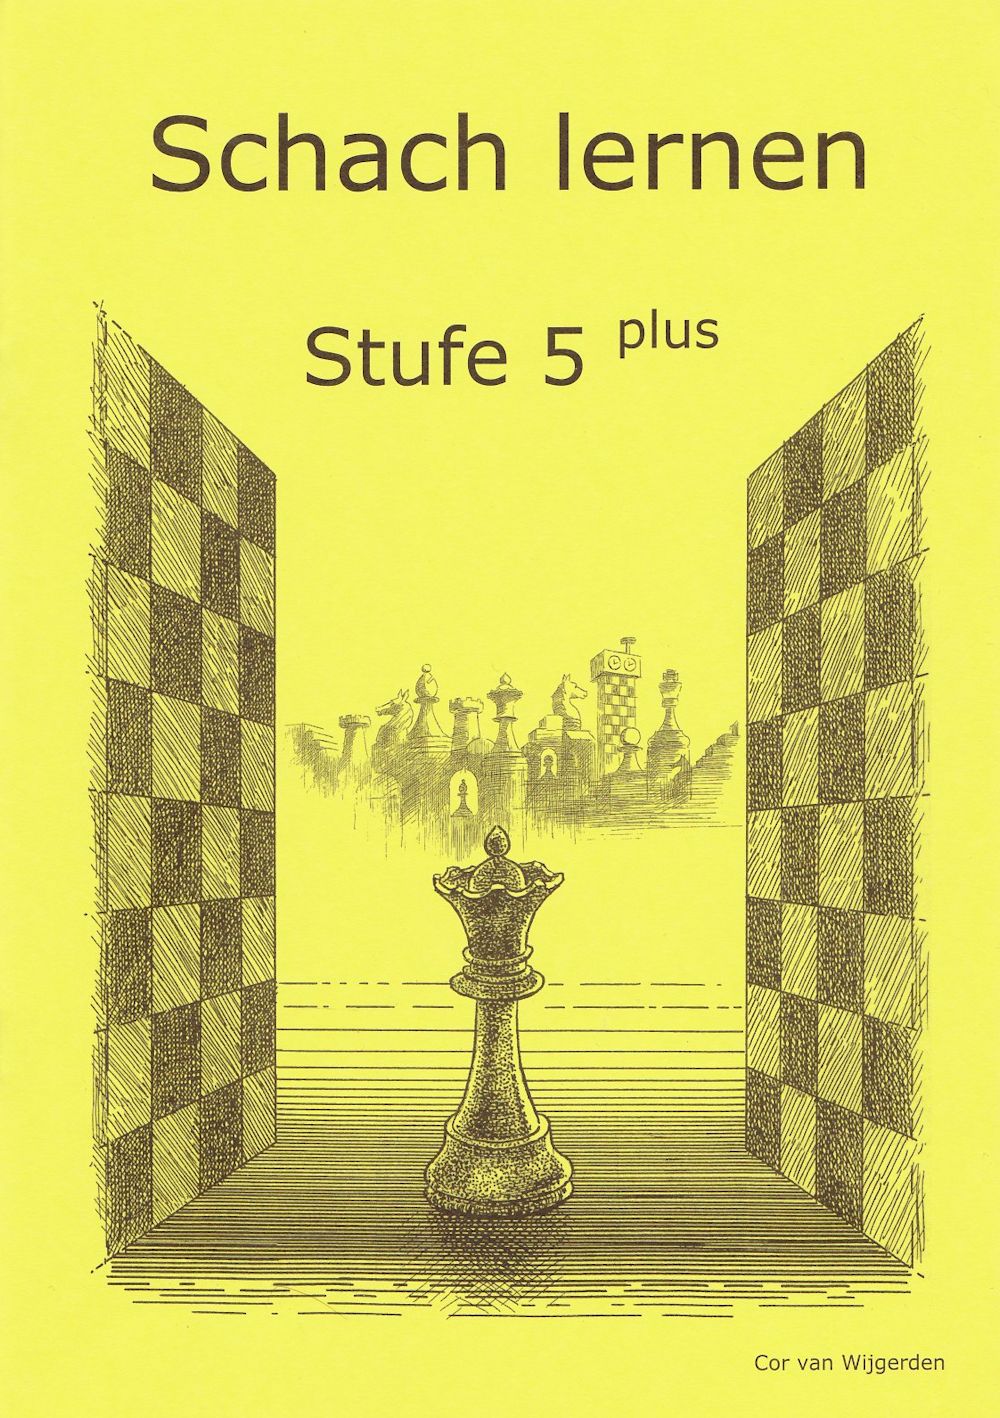 Schach lernen - Stufe 5 plus Schülerheft